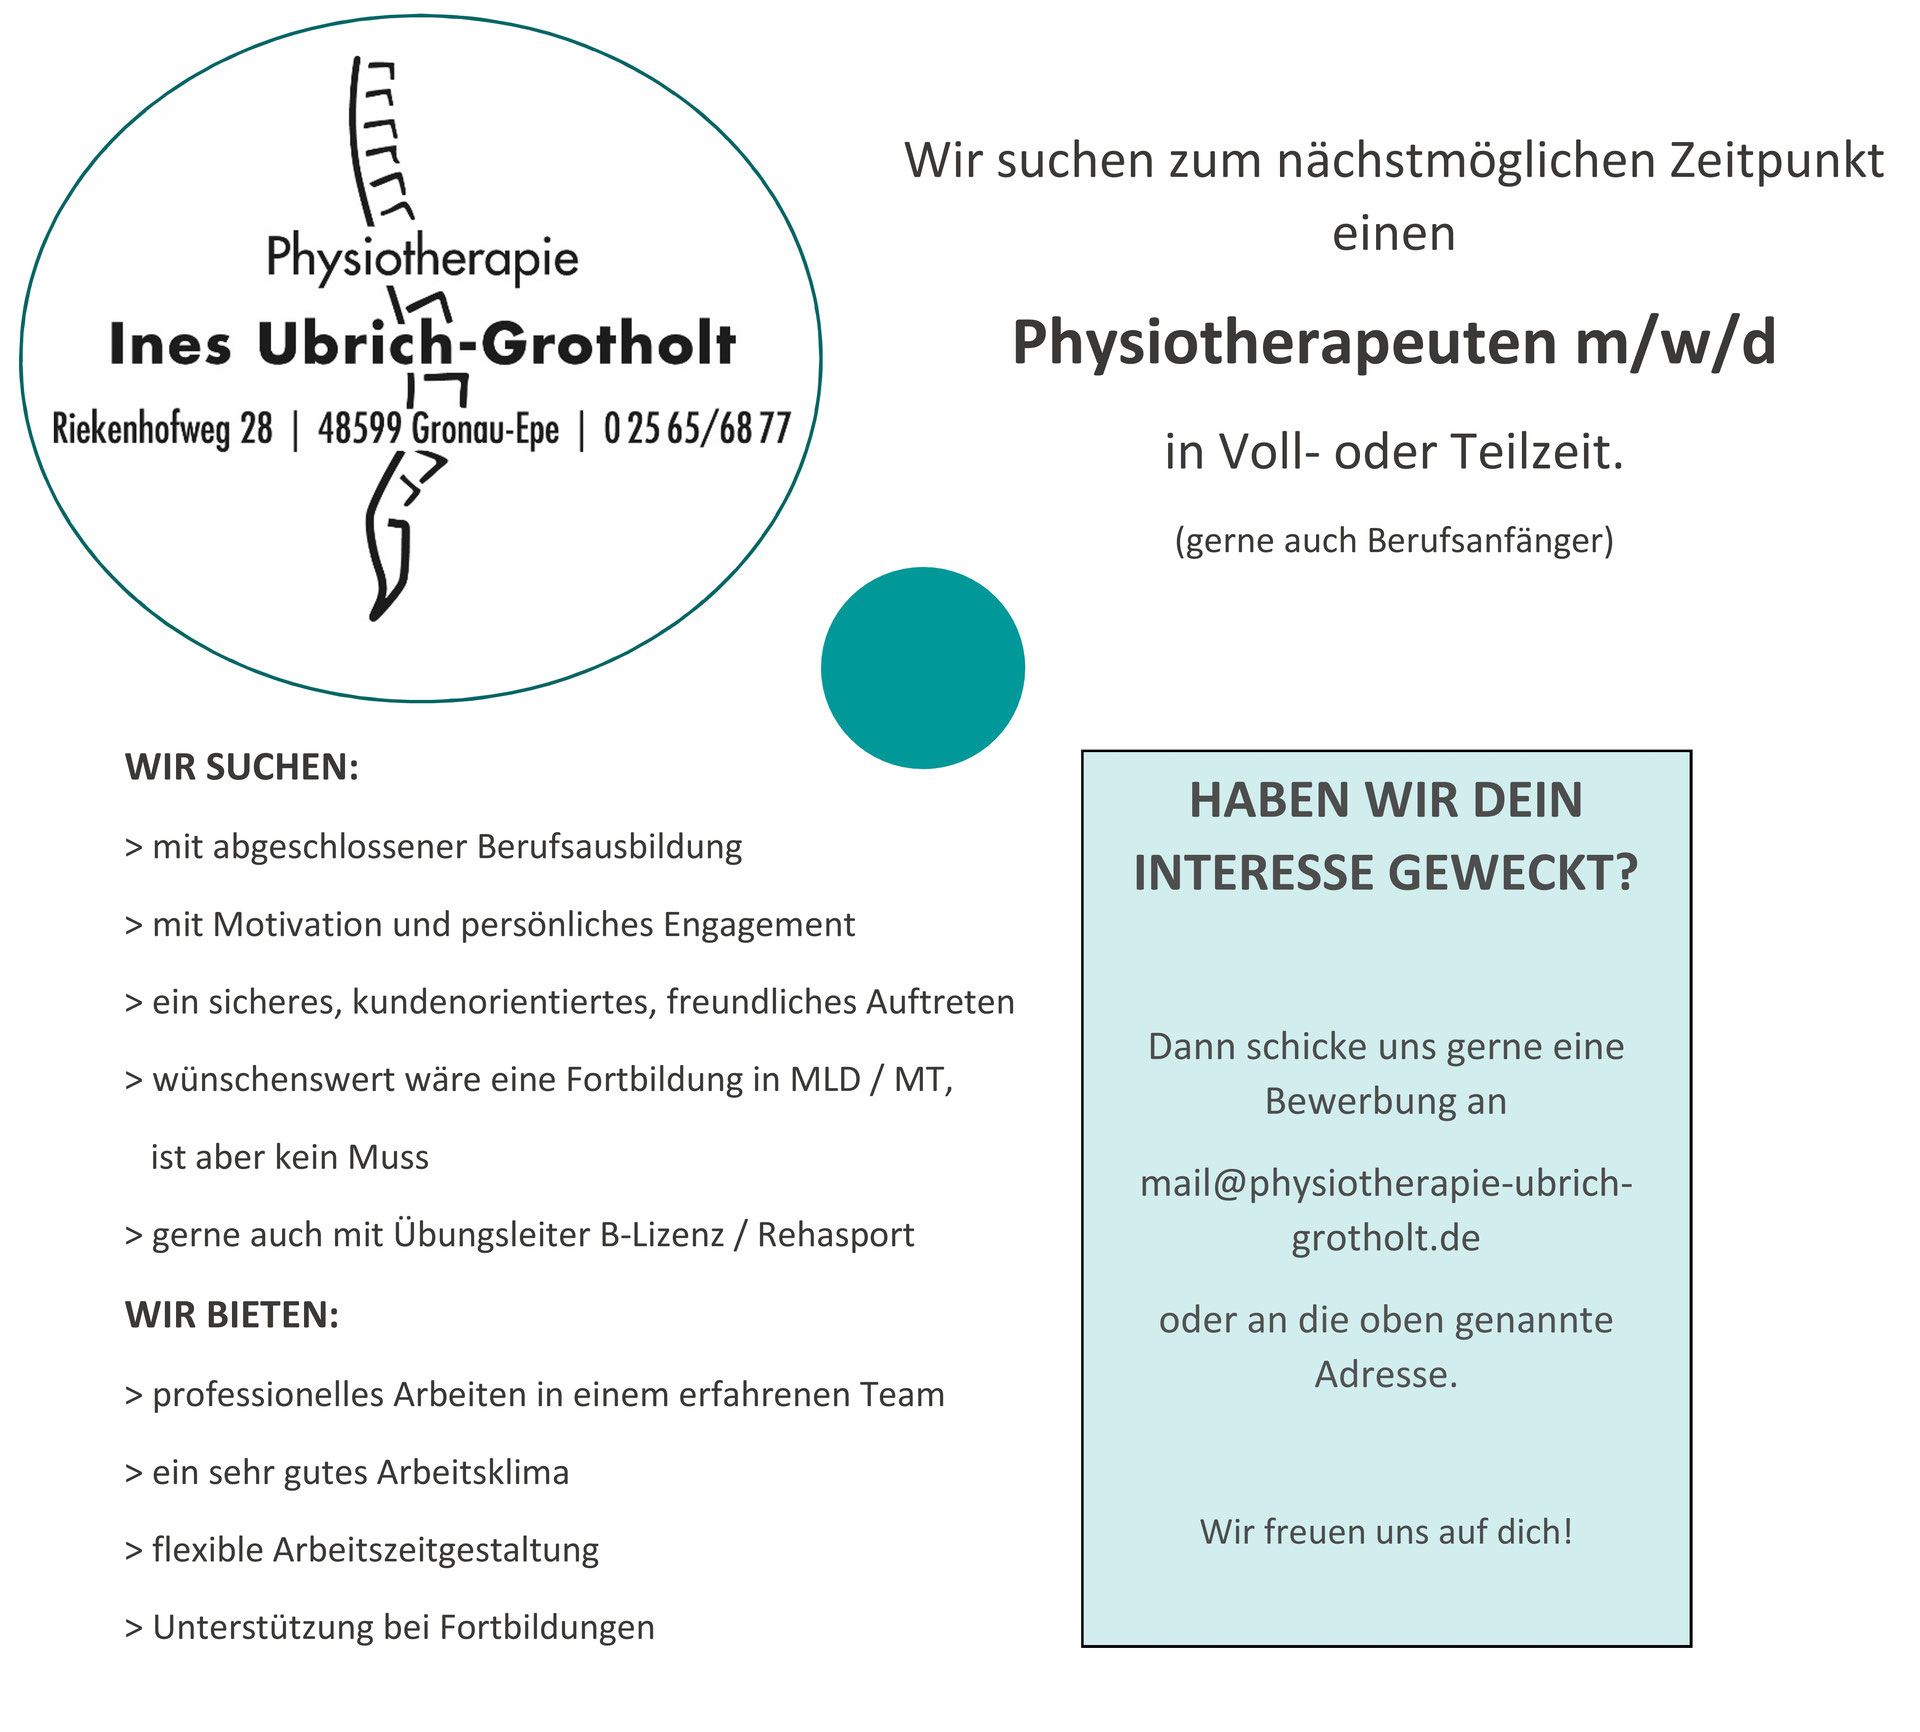 (c) Physiotherapie-ubrich-grotholt.de